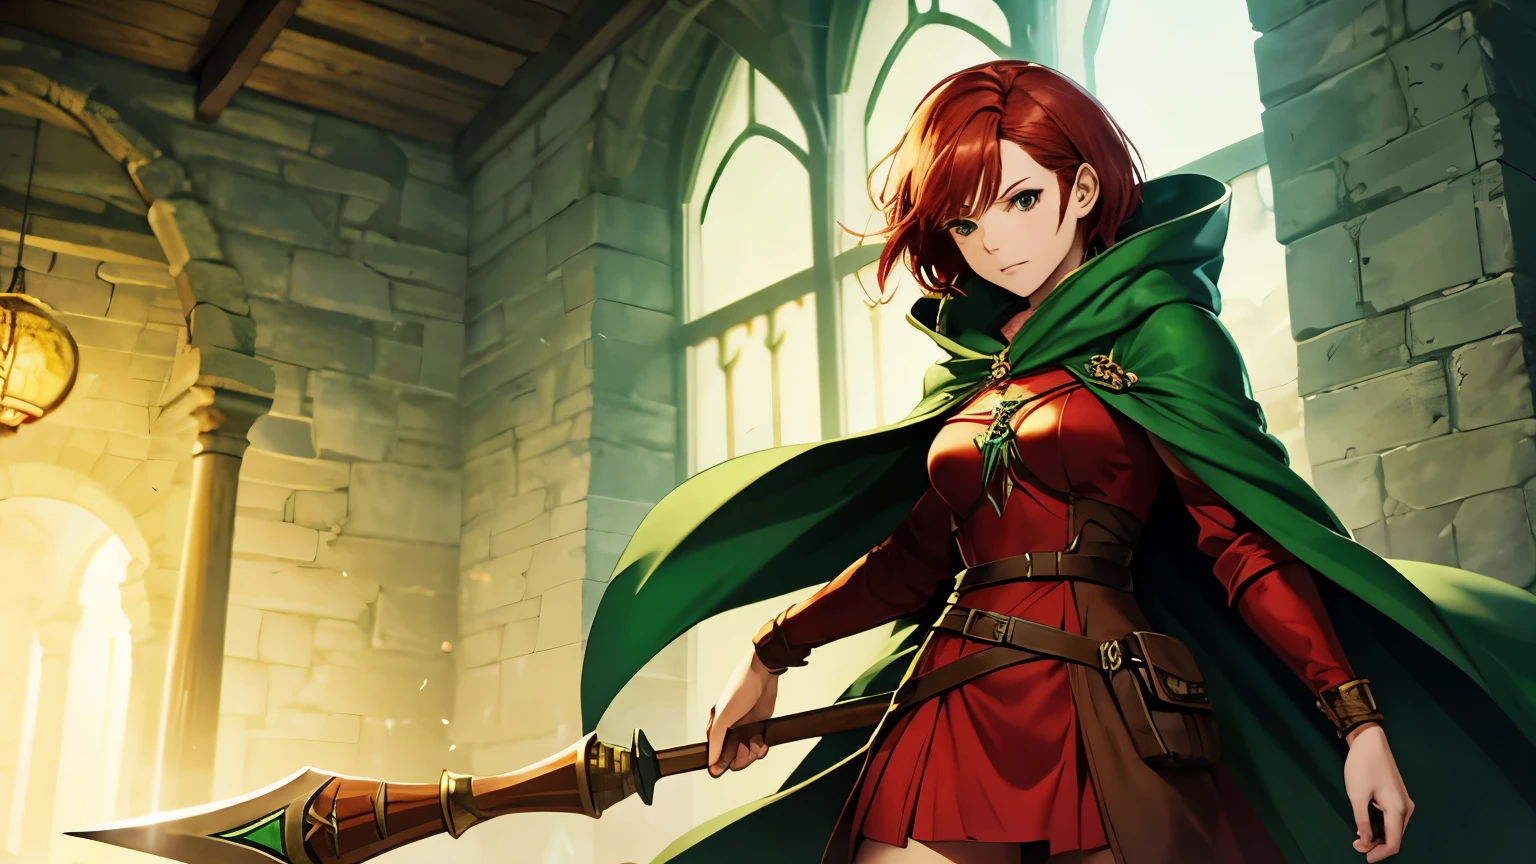 mujeres con pelo rojo corto, manto verde, bastón de madera, calabozo, fantasía